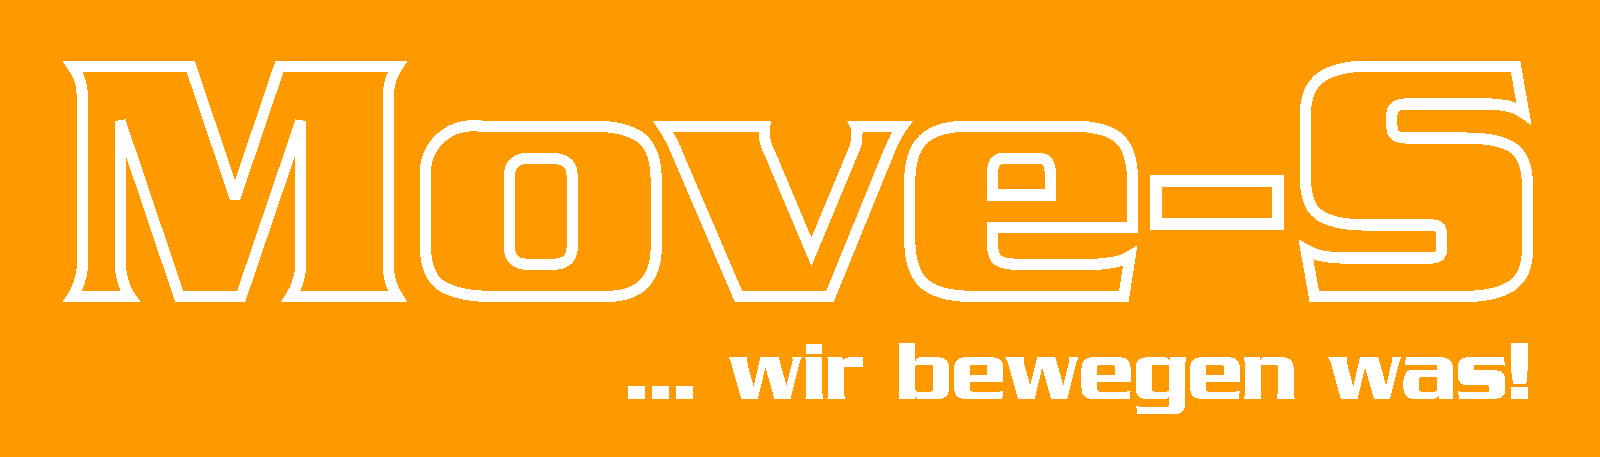 Move-S GmbH